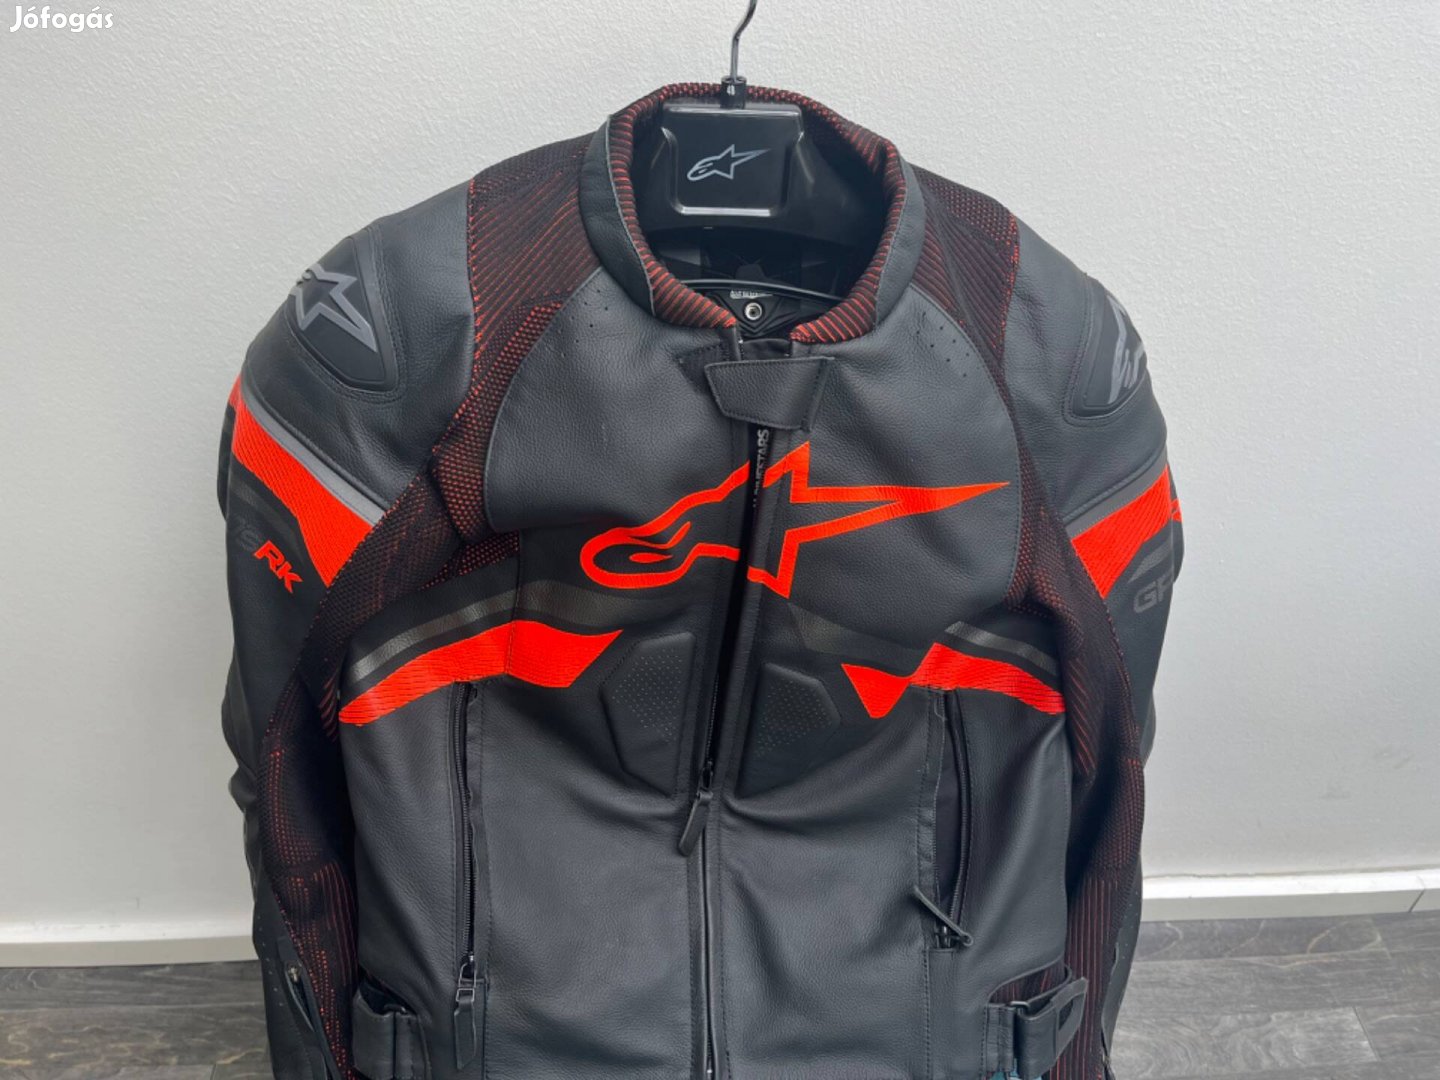 Eladó új Alpinestars GP PLUS R V3 Leather Jacket Rideknit börkabát